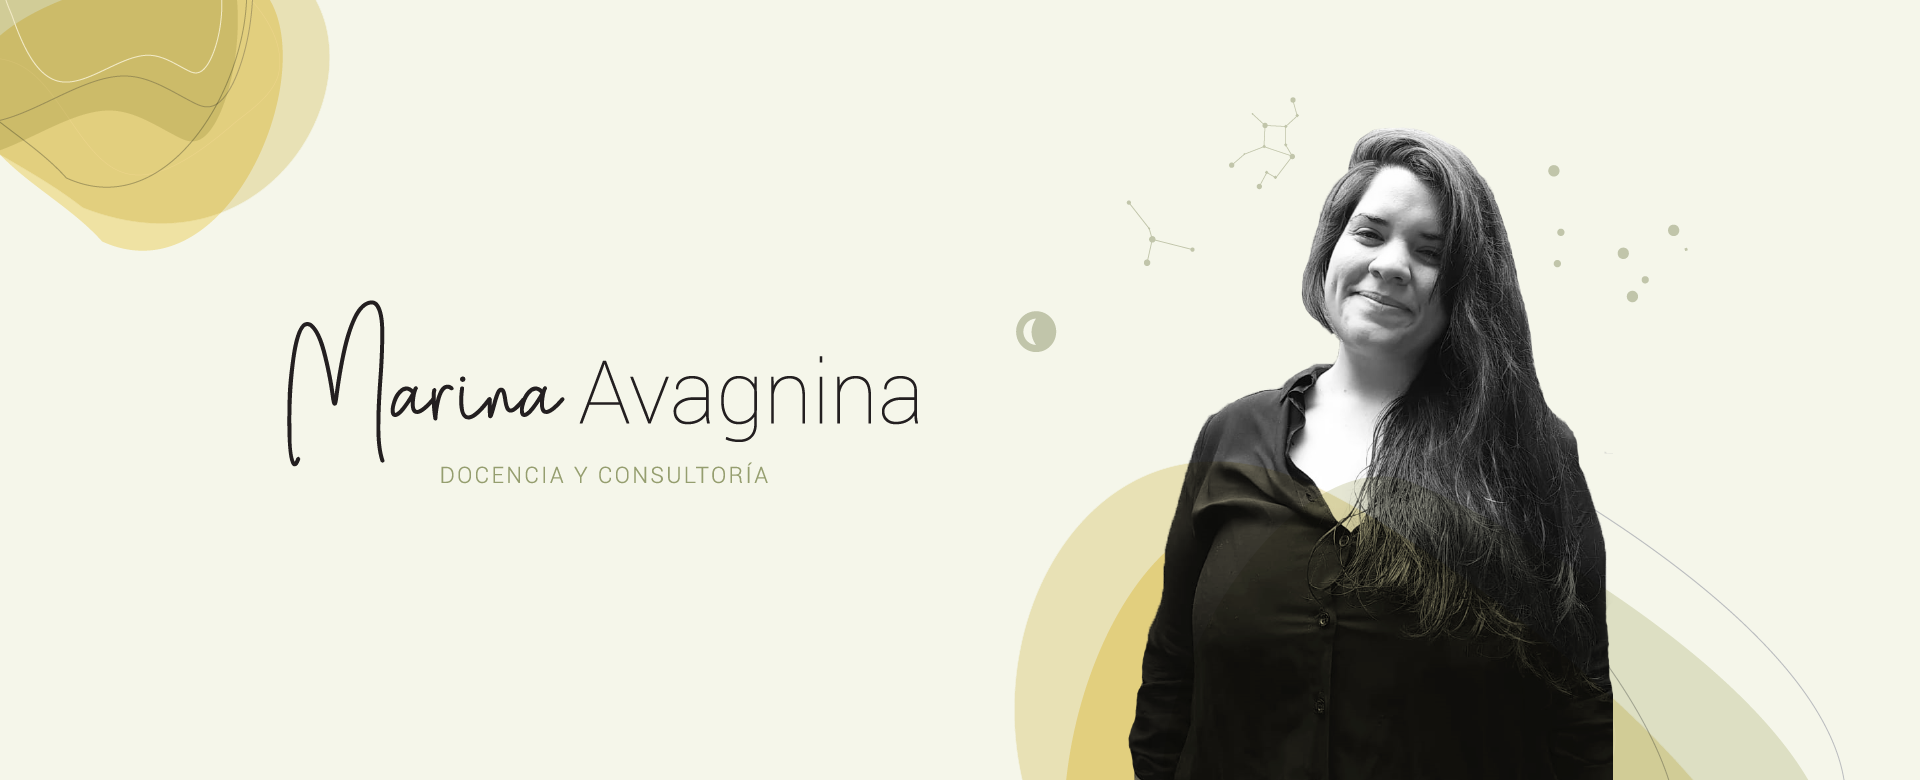 Marina Avagnina